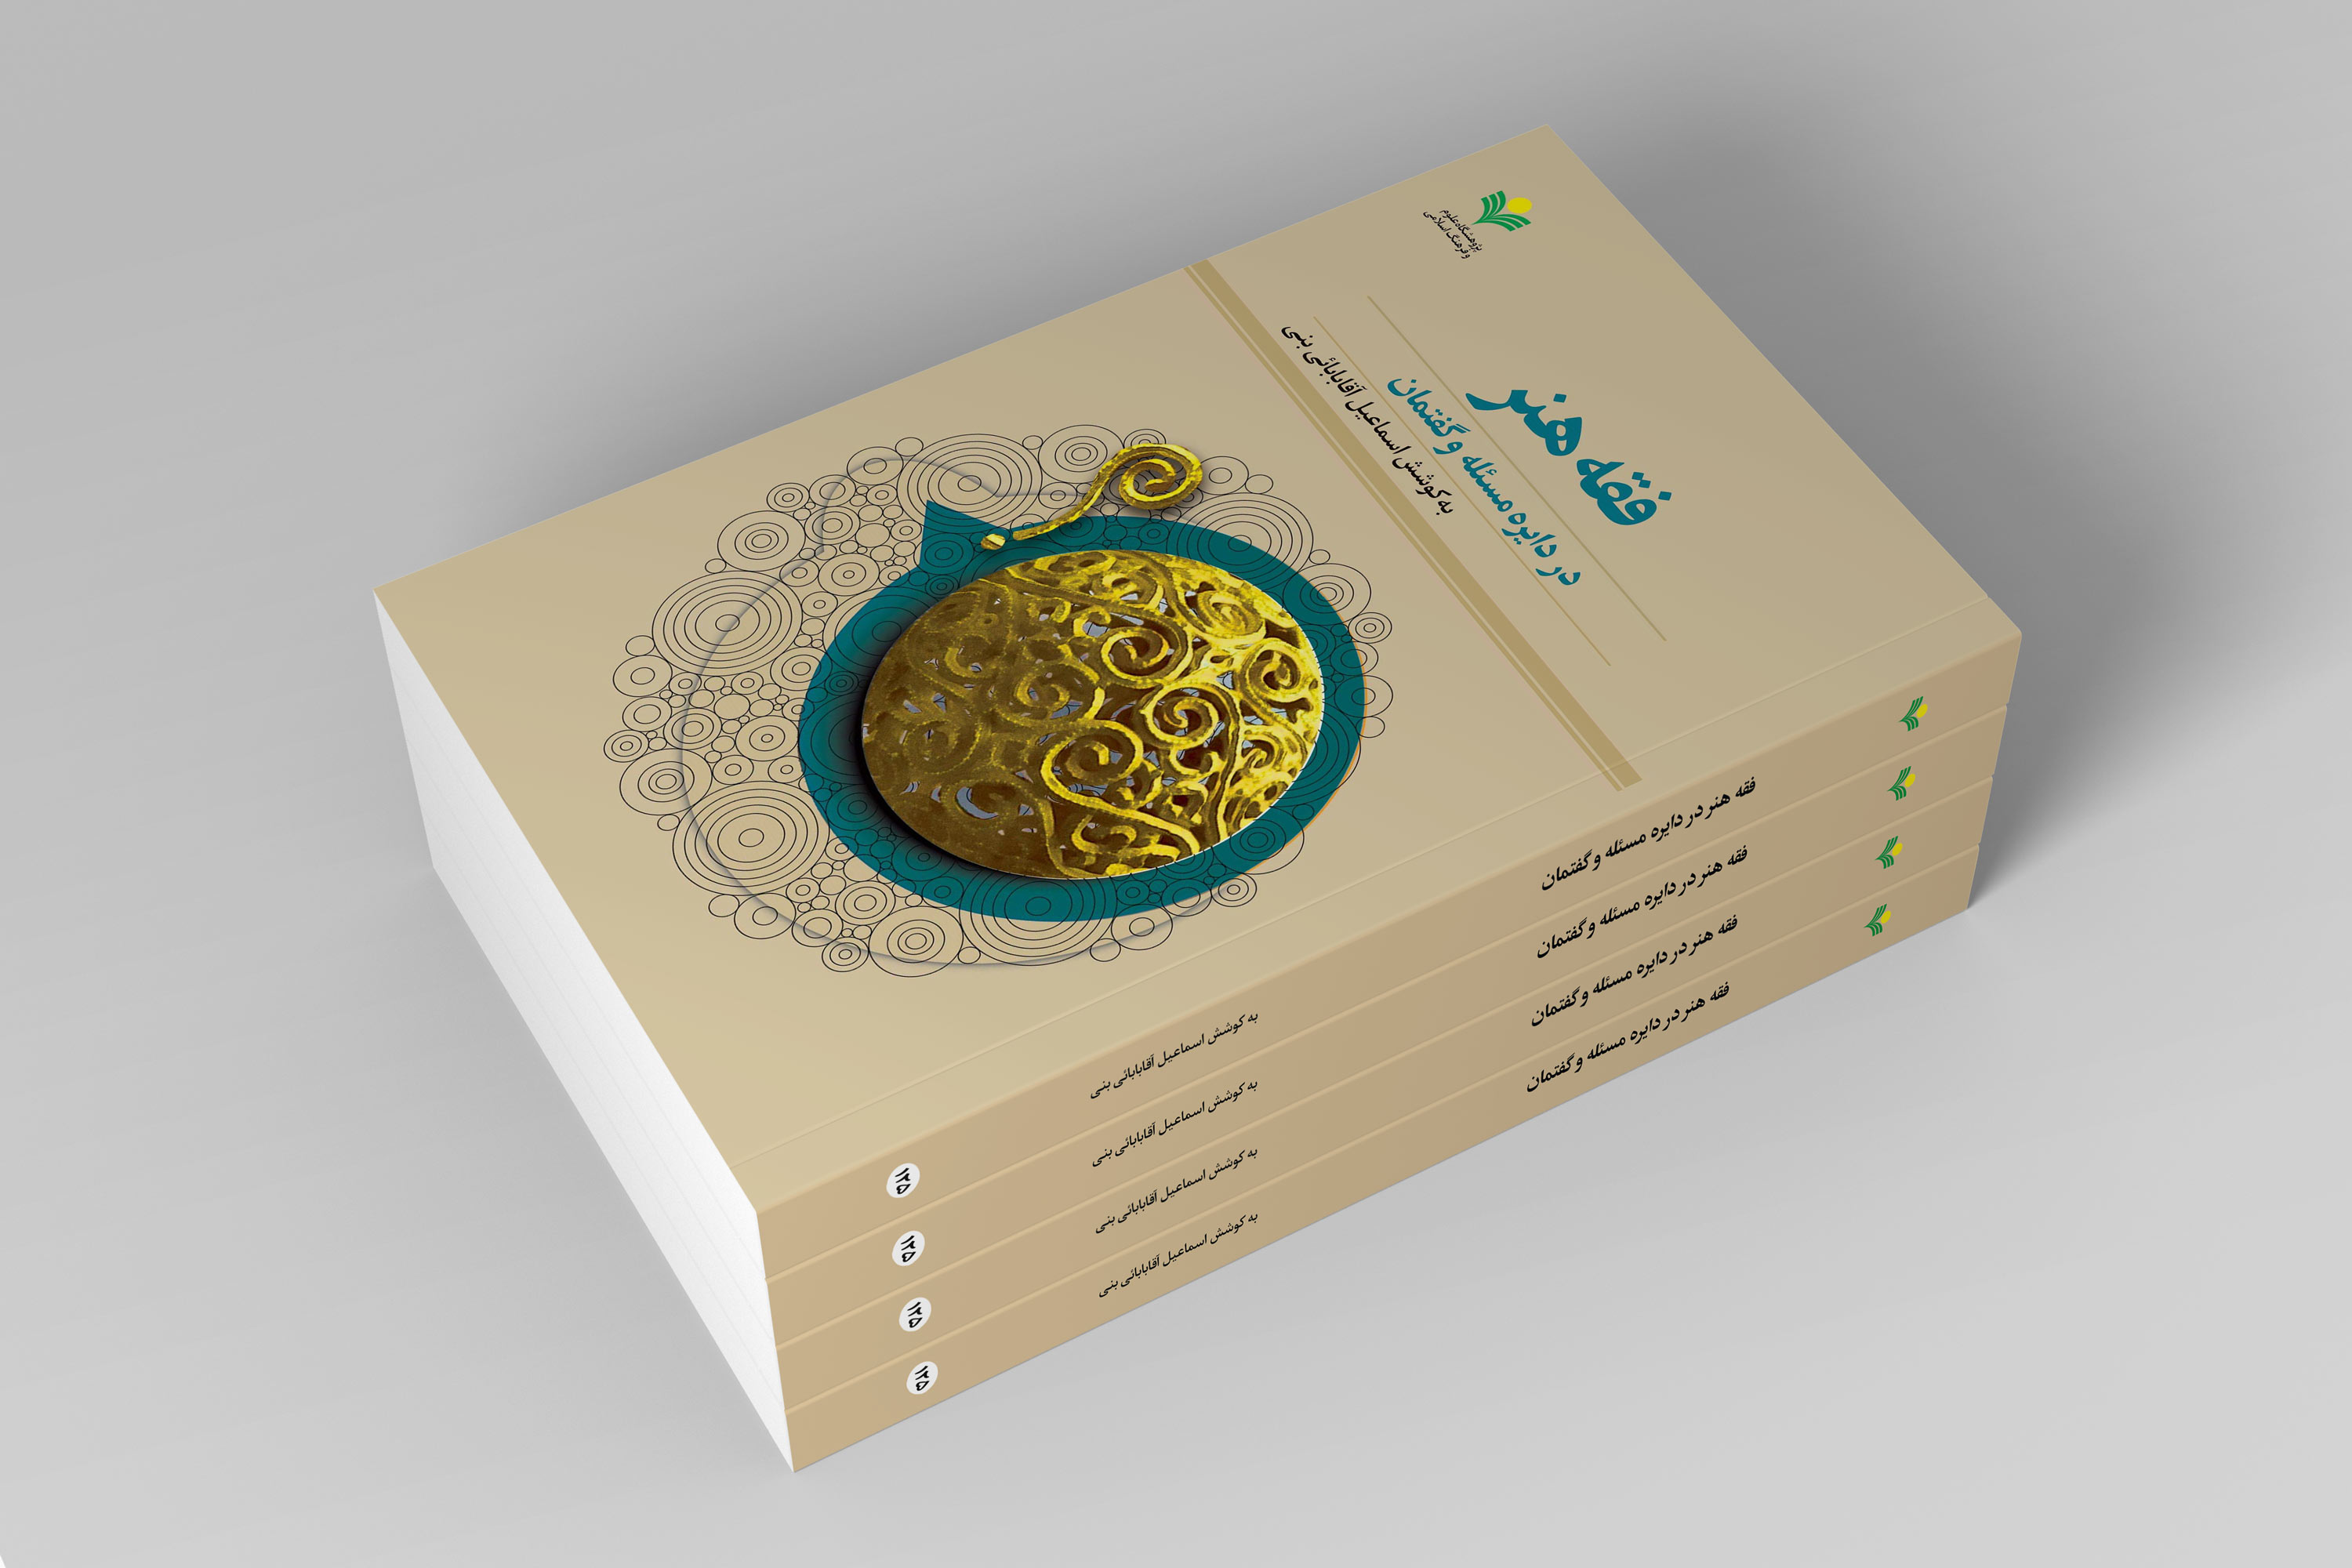 تازه ترین آثار پژوهشگاه علوم و فرهنگ اسلامی در حوزه نشر